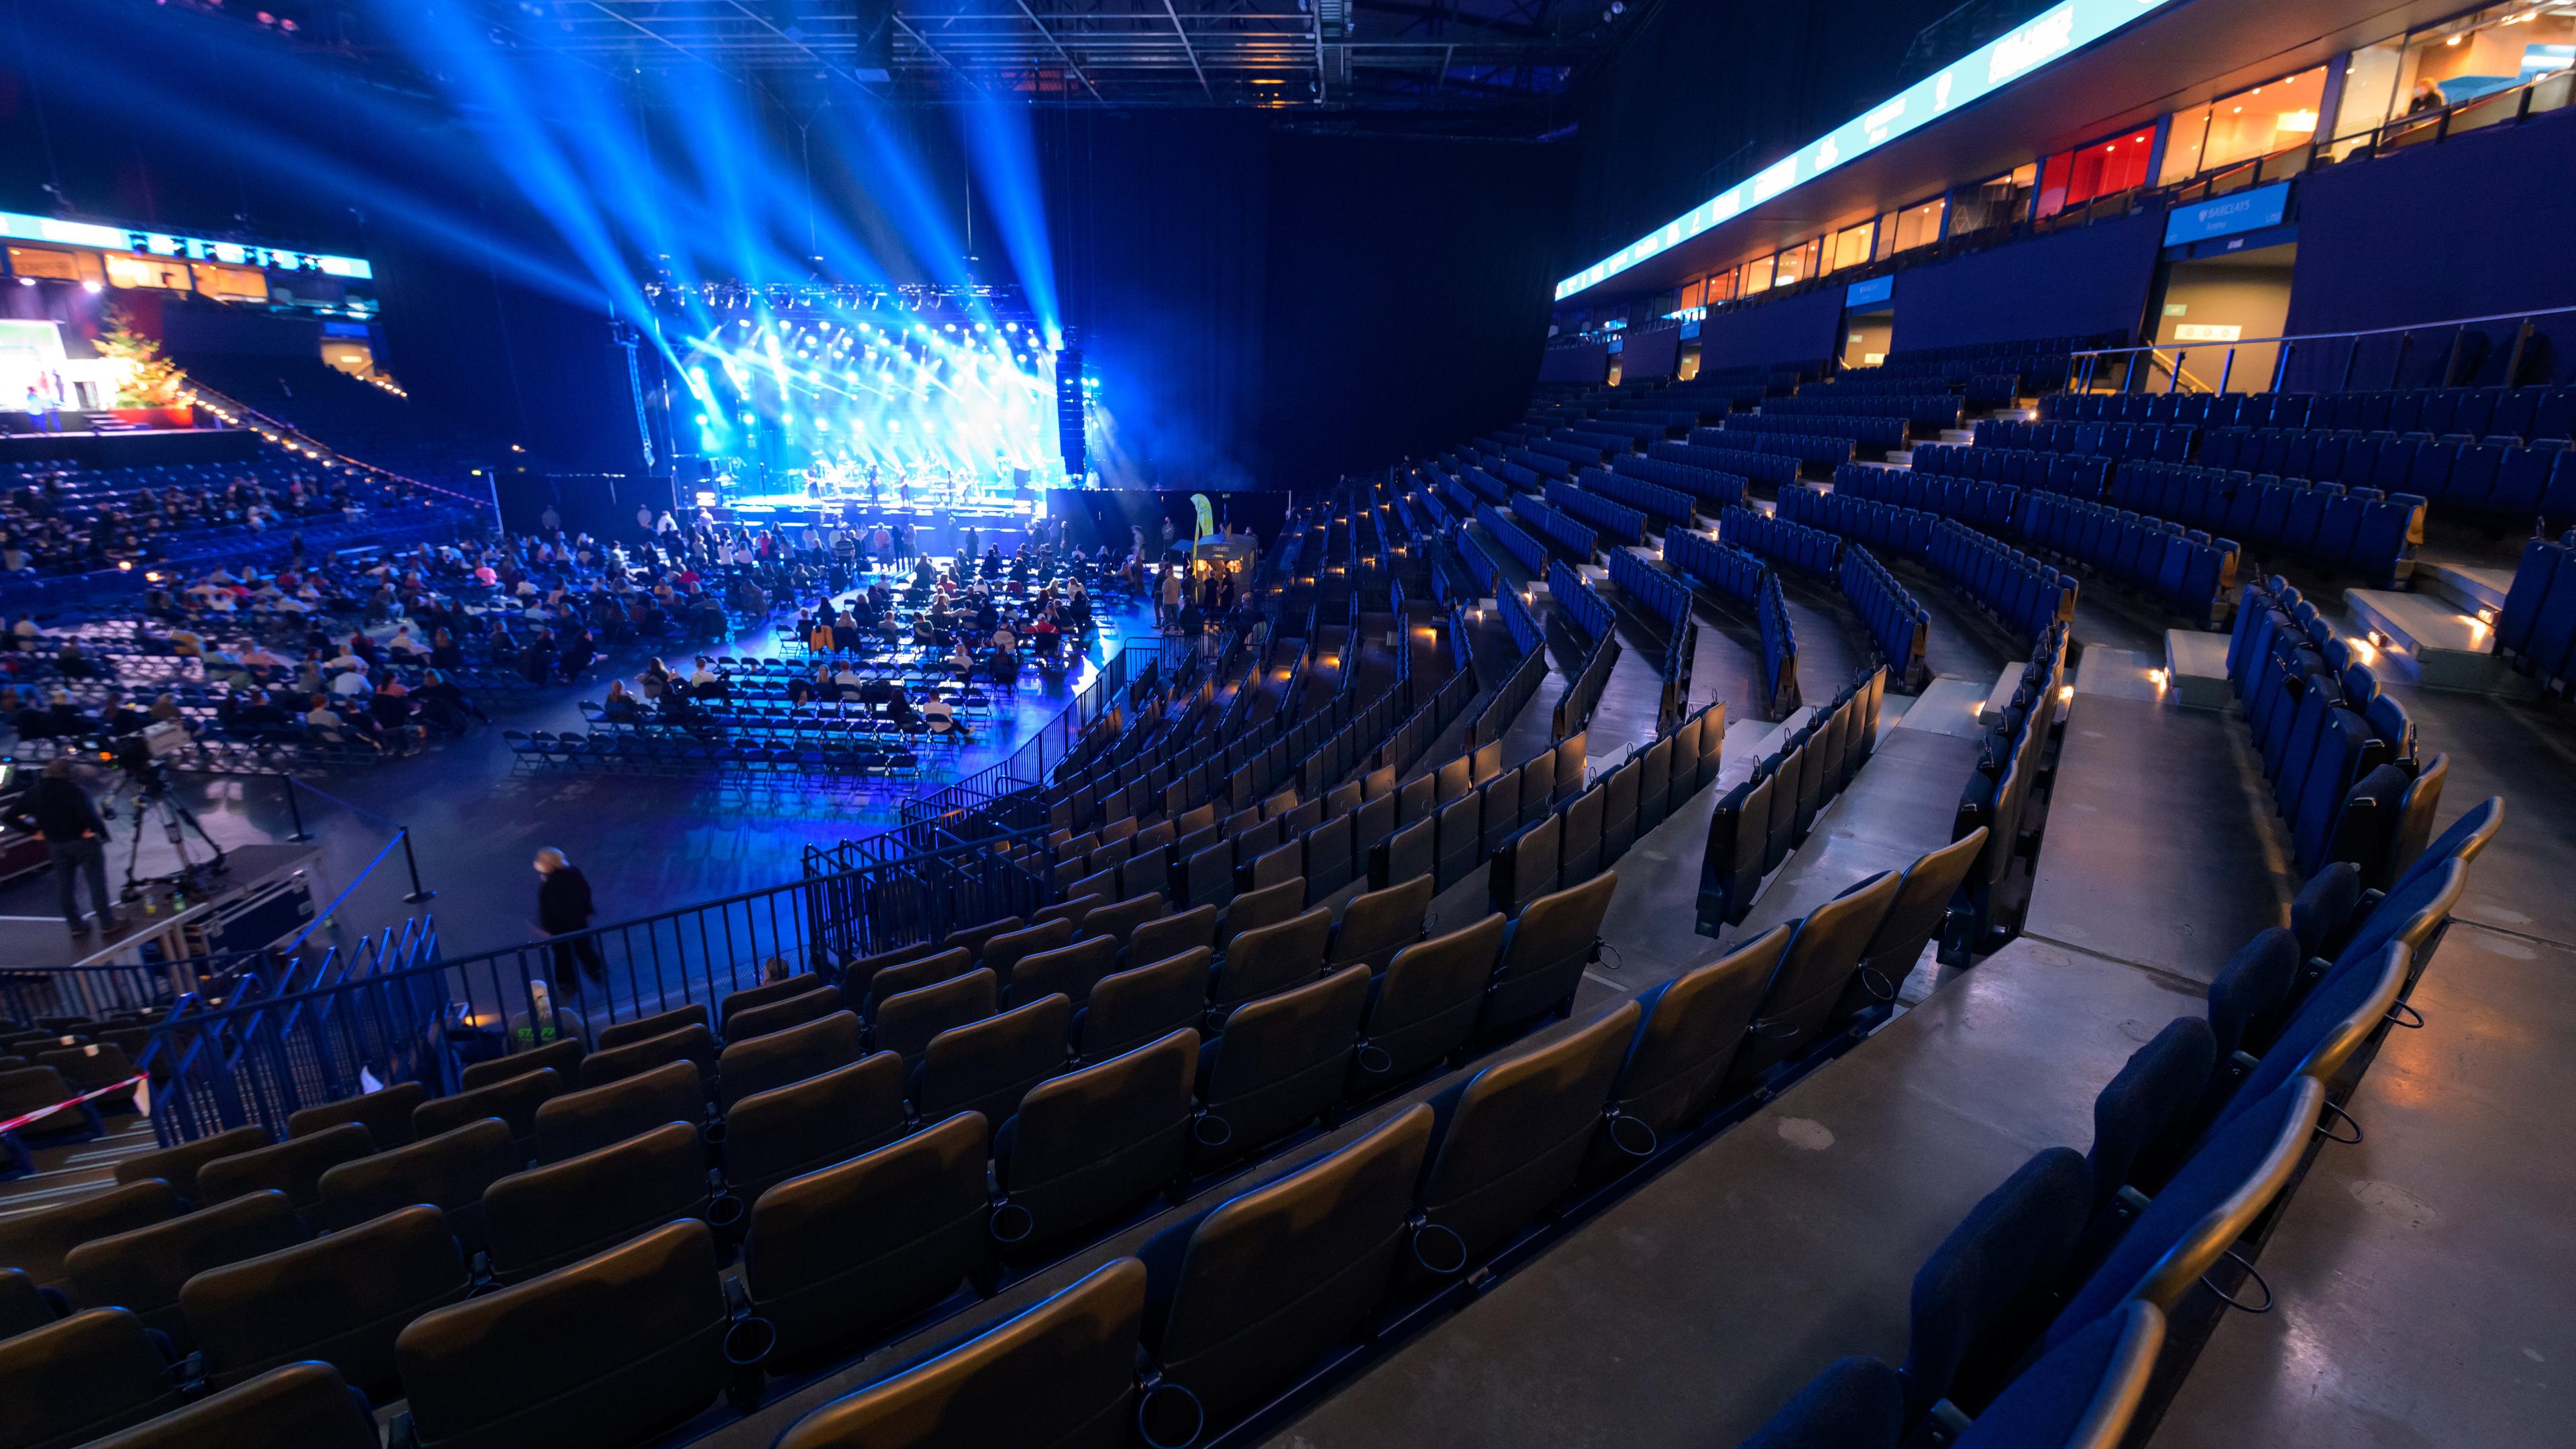 Hamburg: Zahlreiche Sitzplätze auf den Rängen der Arena sind leer, während das Publikum großteils in der Mitte vor der Bühne sitzt. 